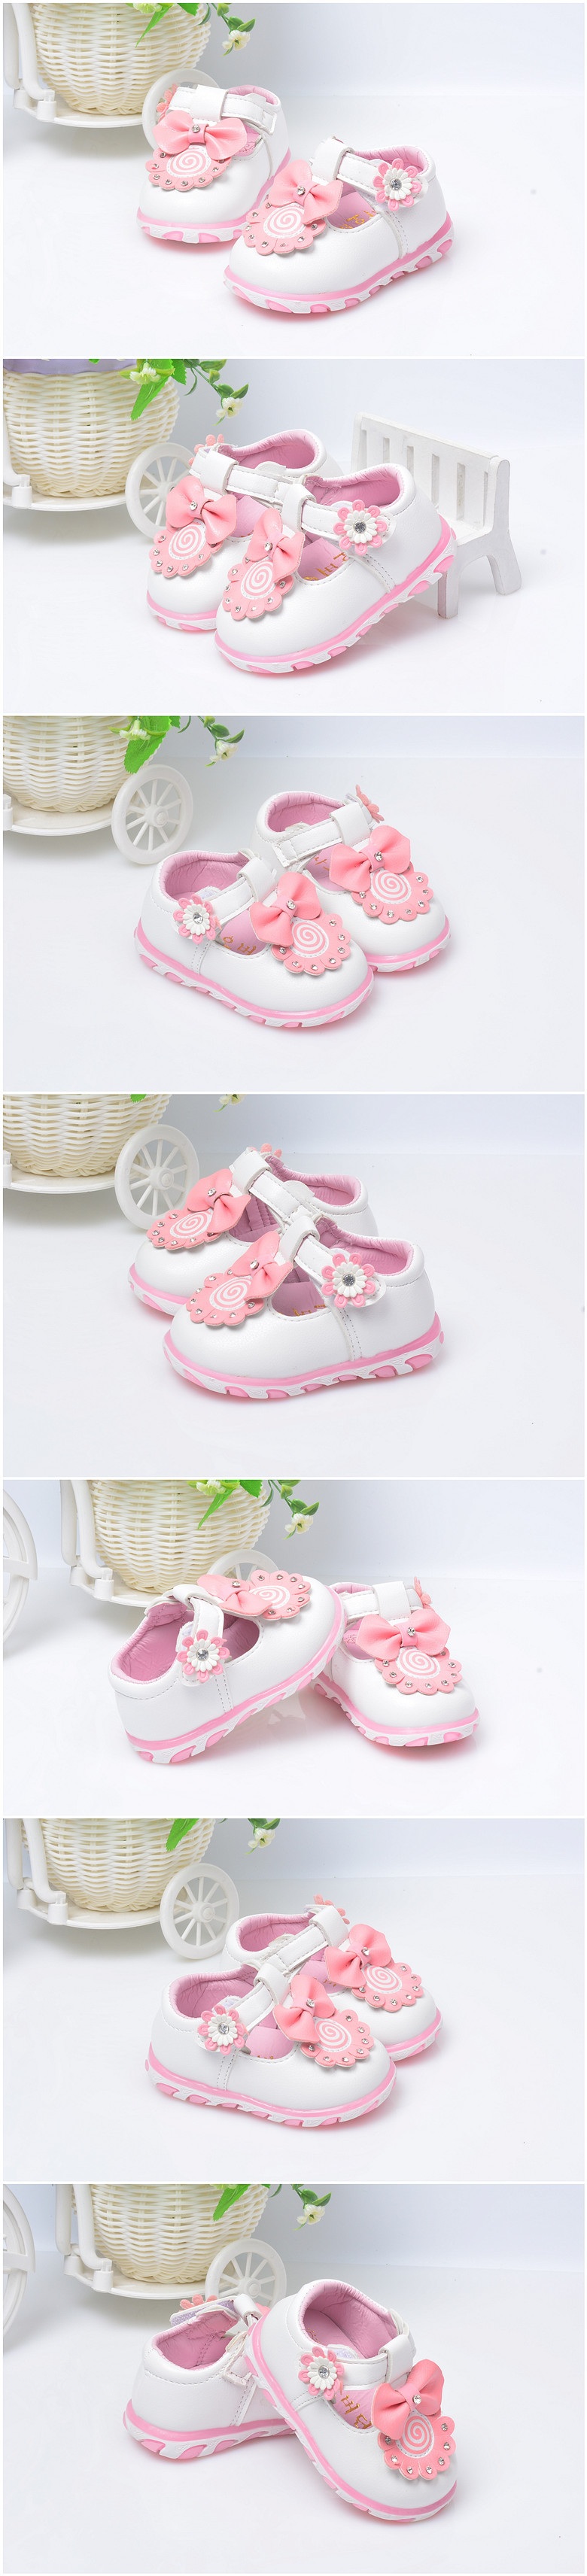 Chaussures enfants en PU LA-8 ronde brodé pour printemps - semelle caoutchouc - Ref 1019081 Image 7